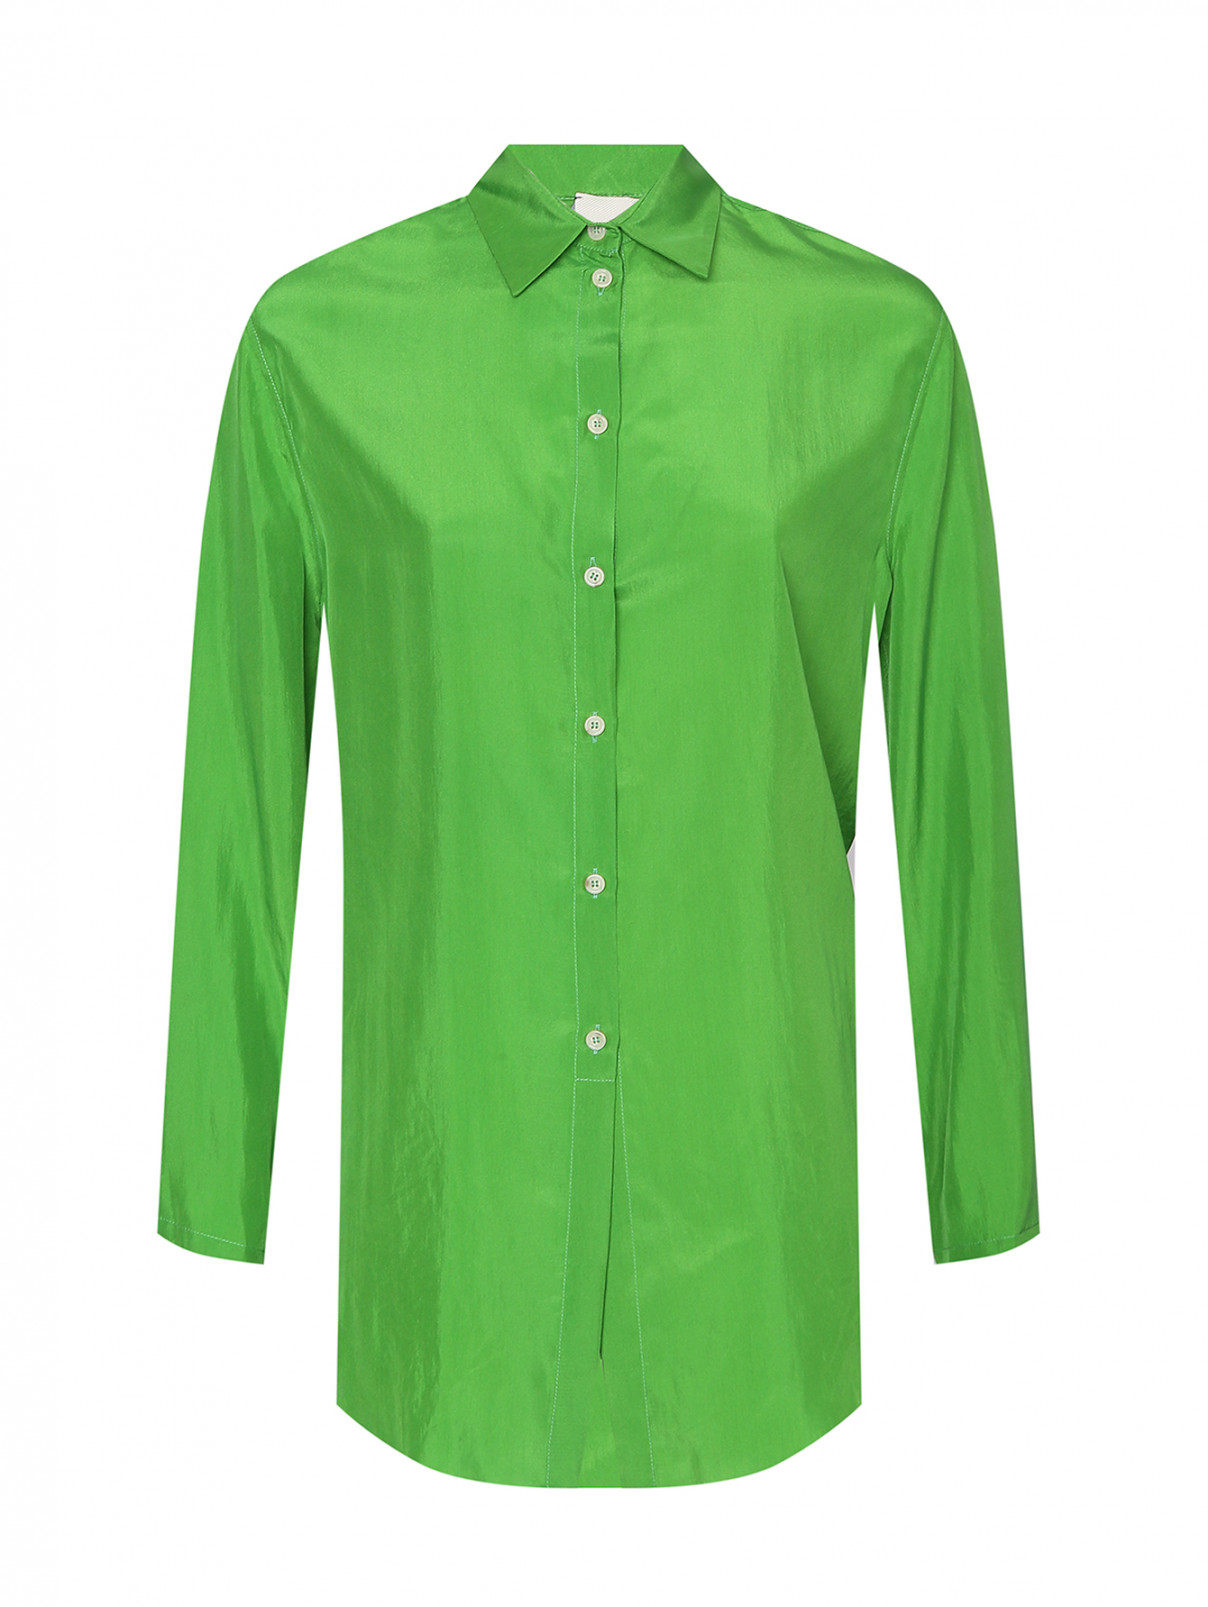 Рубашка из шелка на пуговицах Alysi  –  Общий вид  – Цвет:  Зеленый